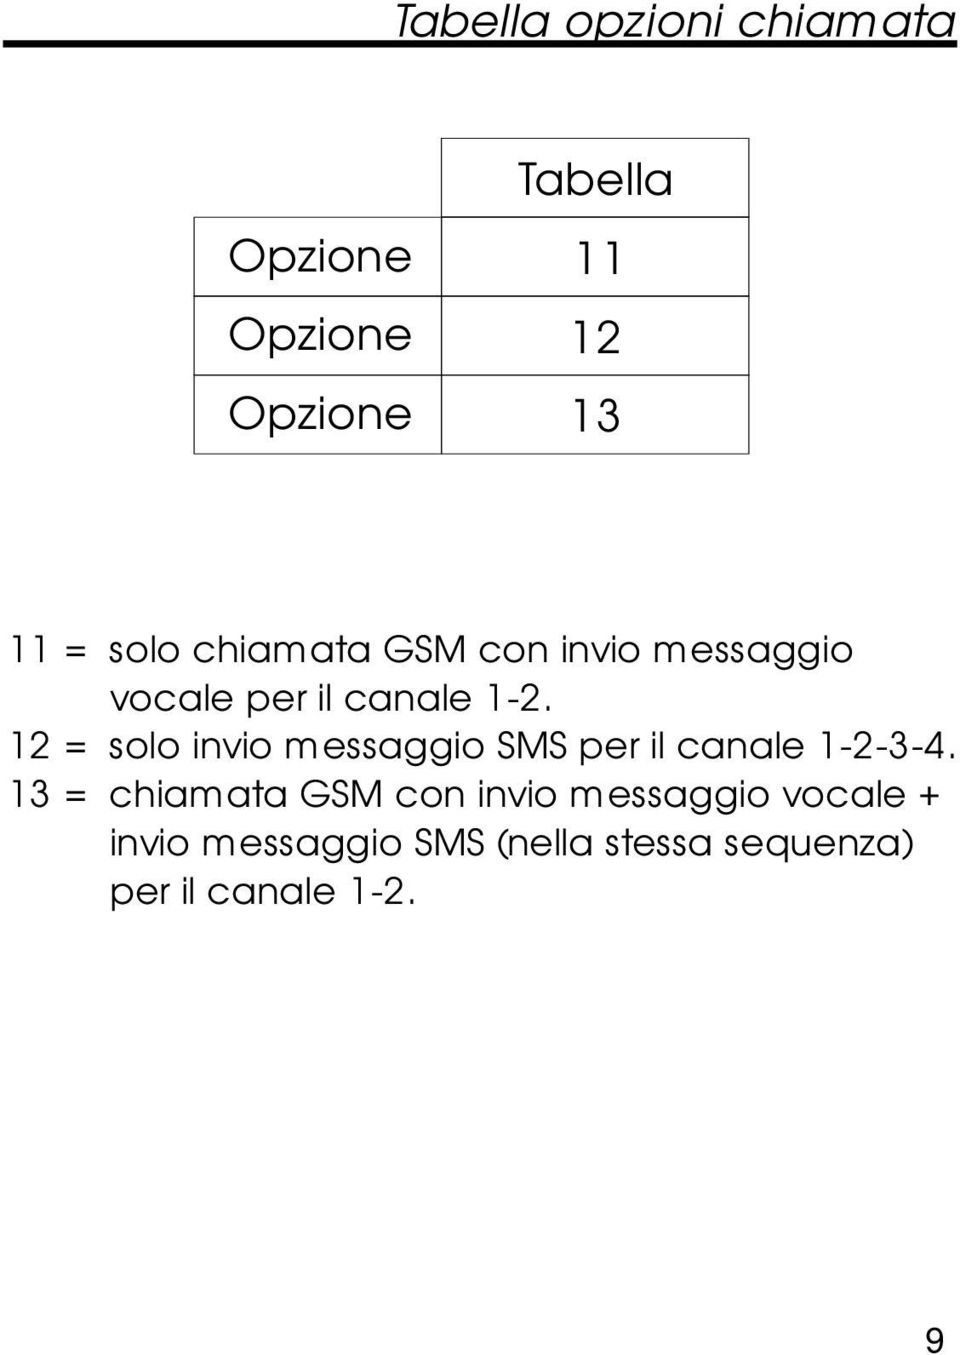 12 = solo invio messaggio SMS per il canale 1-2-3-4.